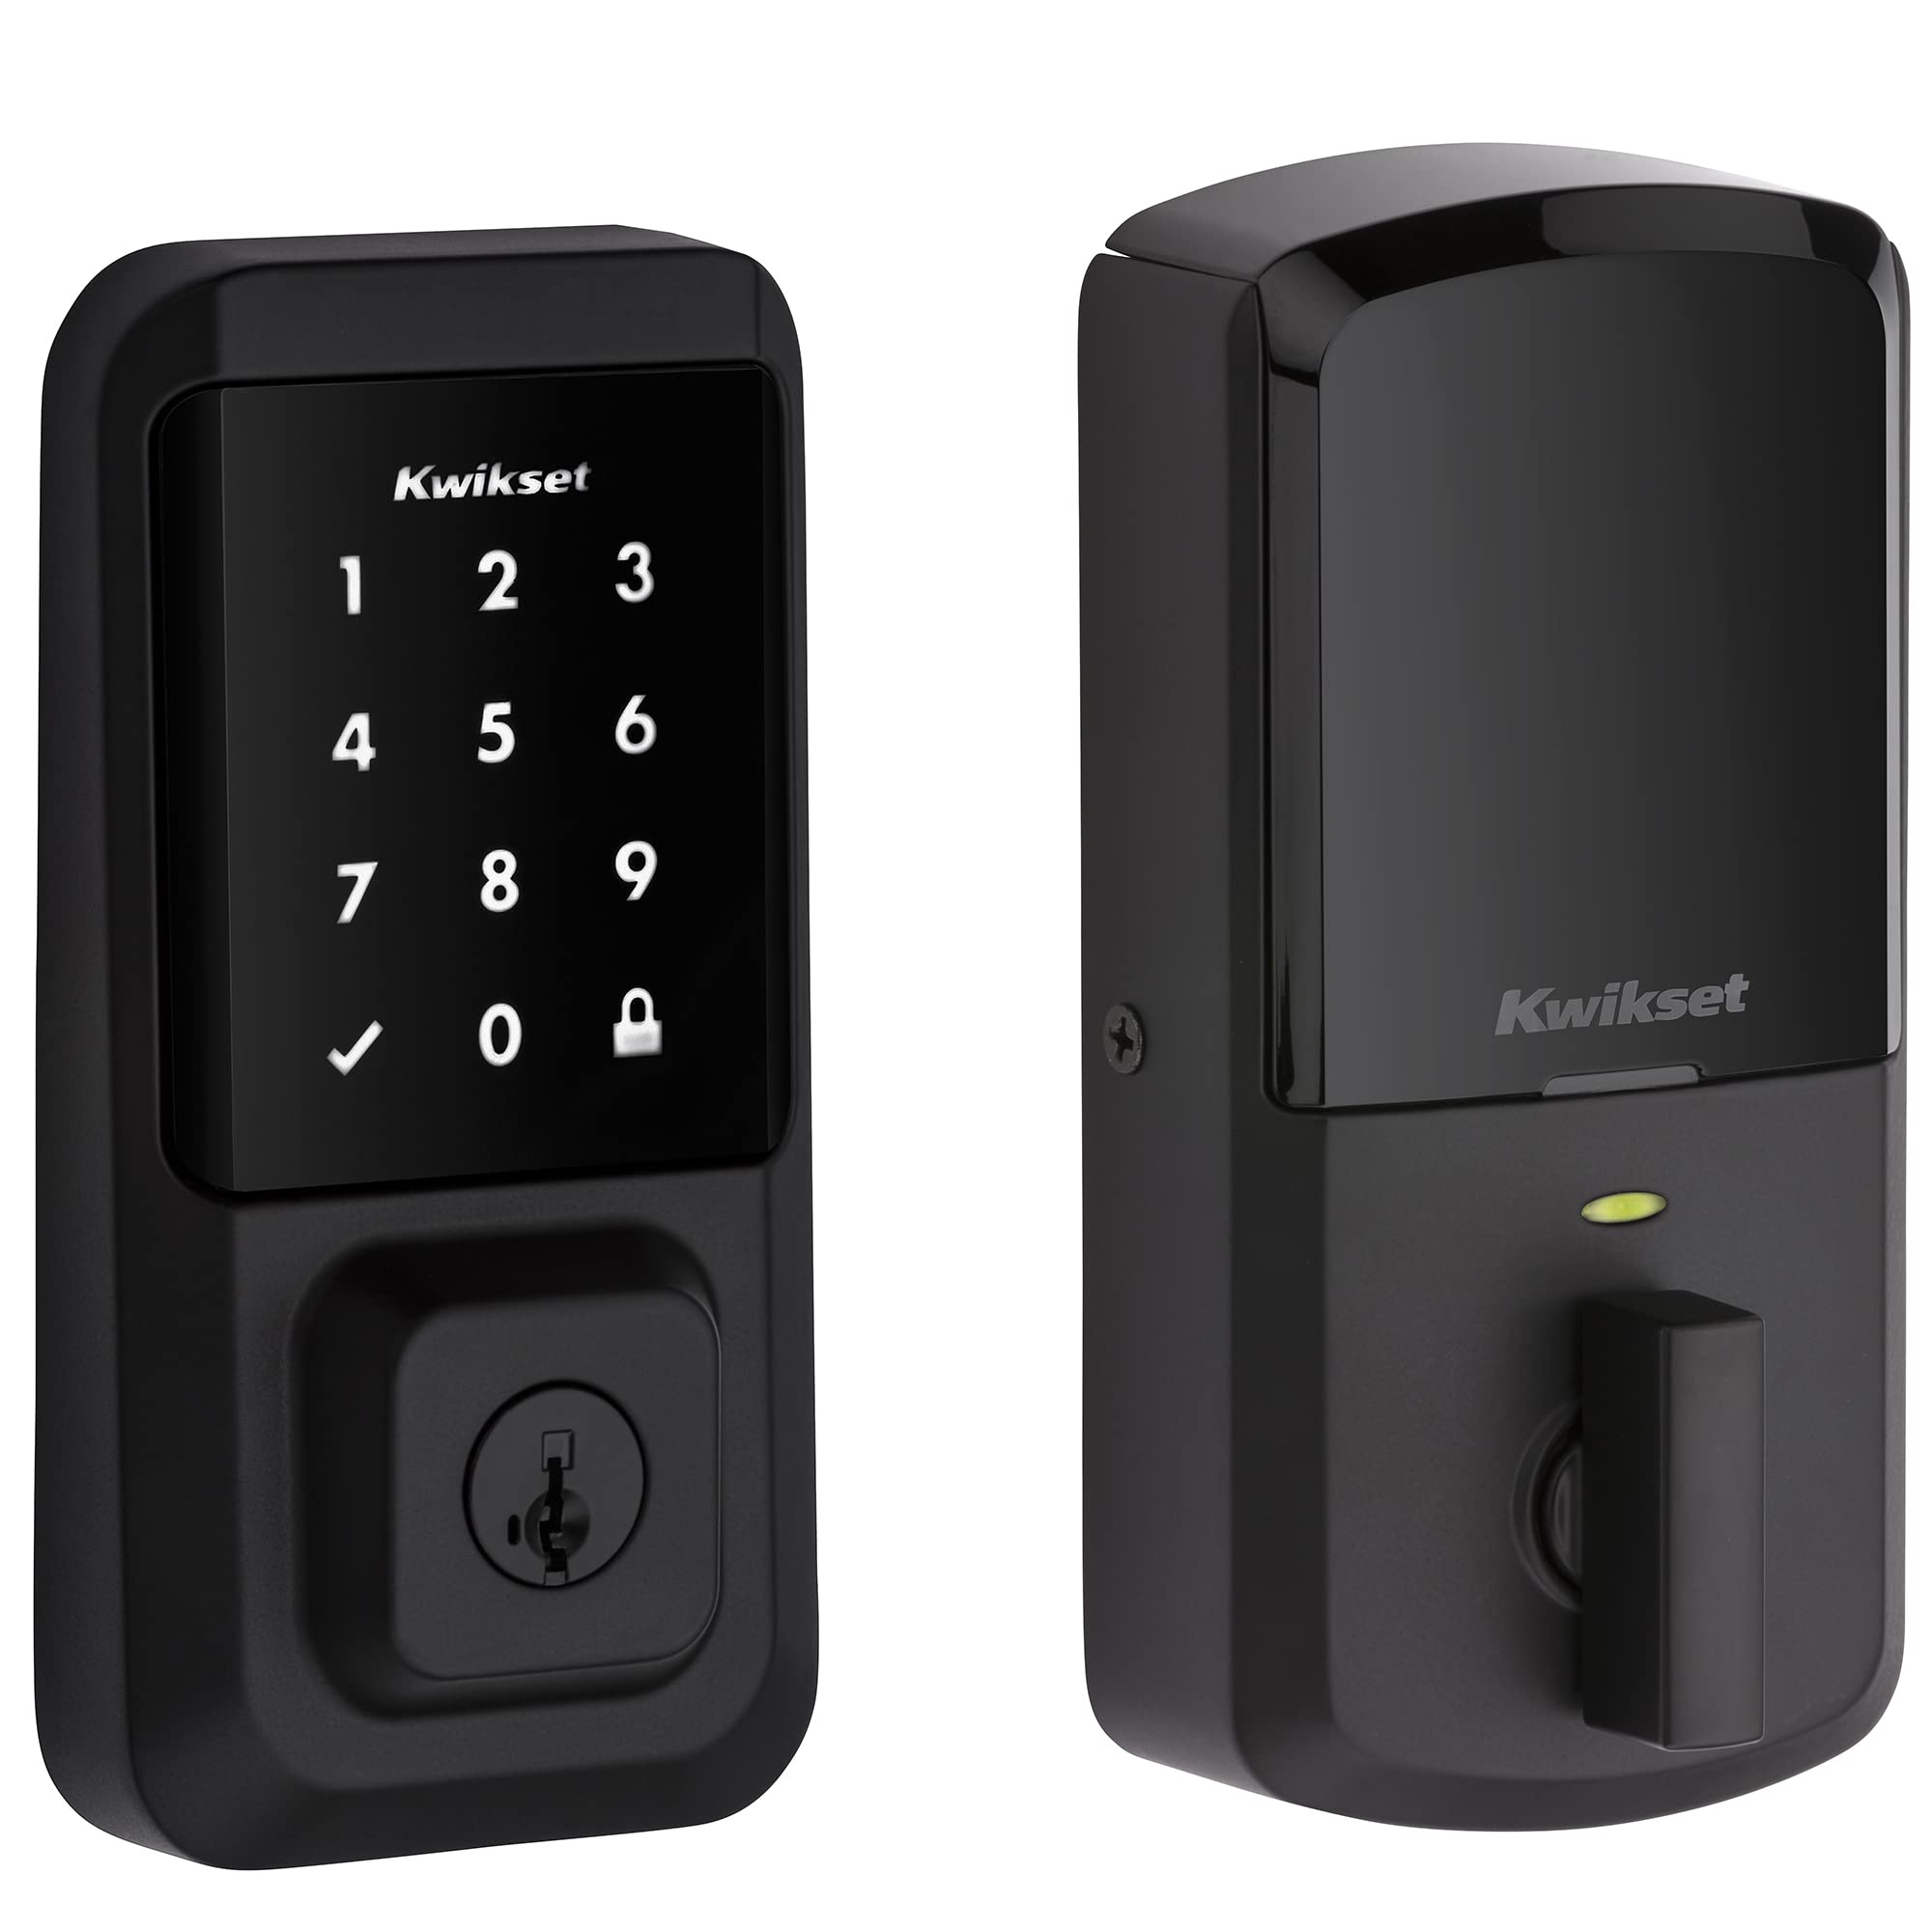 Kwikset 99390-001 Halo Wi-Fi Smart Lock Entrada sem chave Fechadura eletrônica com tela sensível ao toque com SmartKey Security